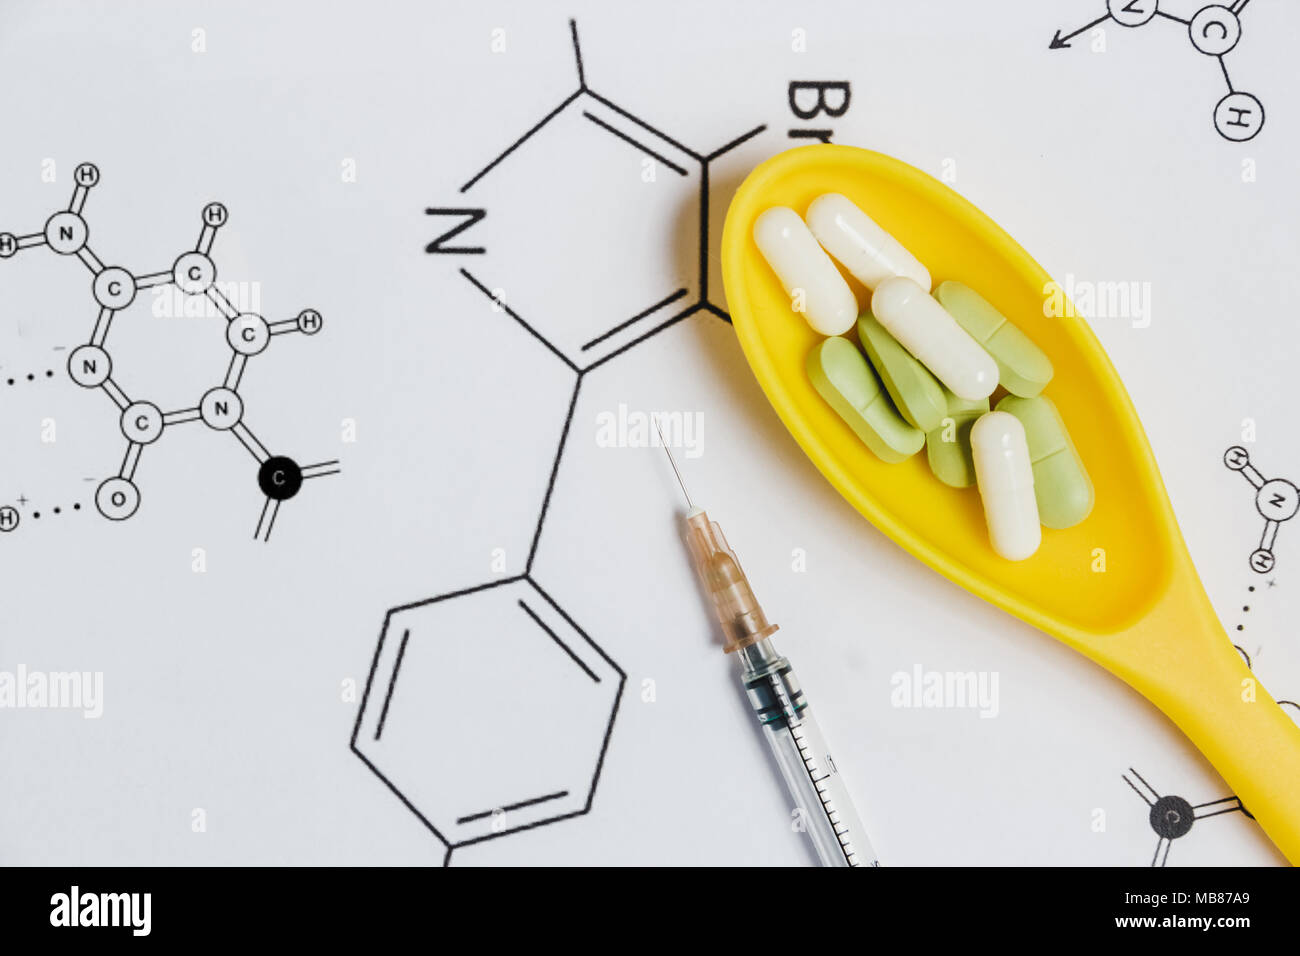 Assortimento di pillole, compresse e capsule in giallo cucchiaio, siringa su sfondo bianco con formula chimica. Foto Stock